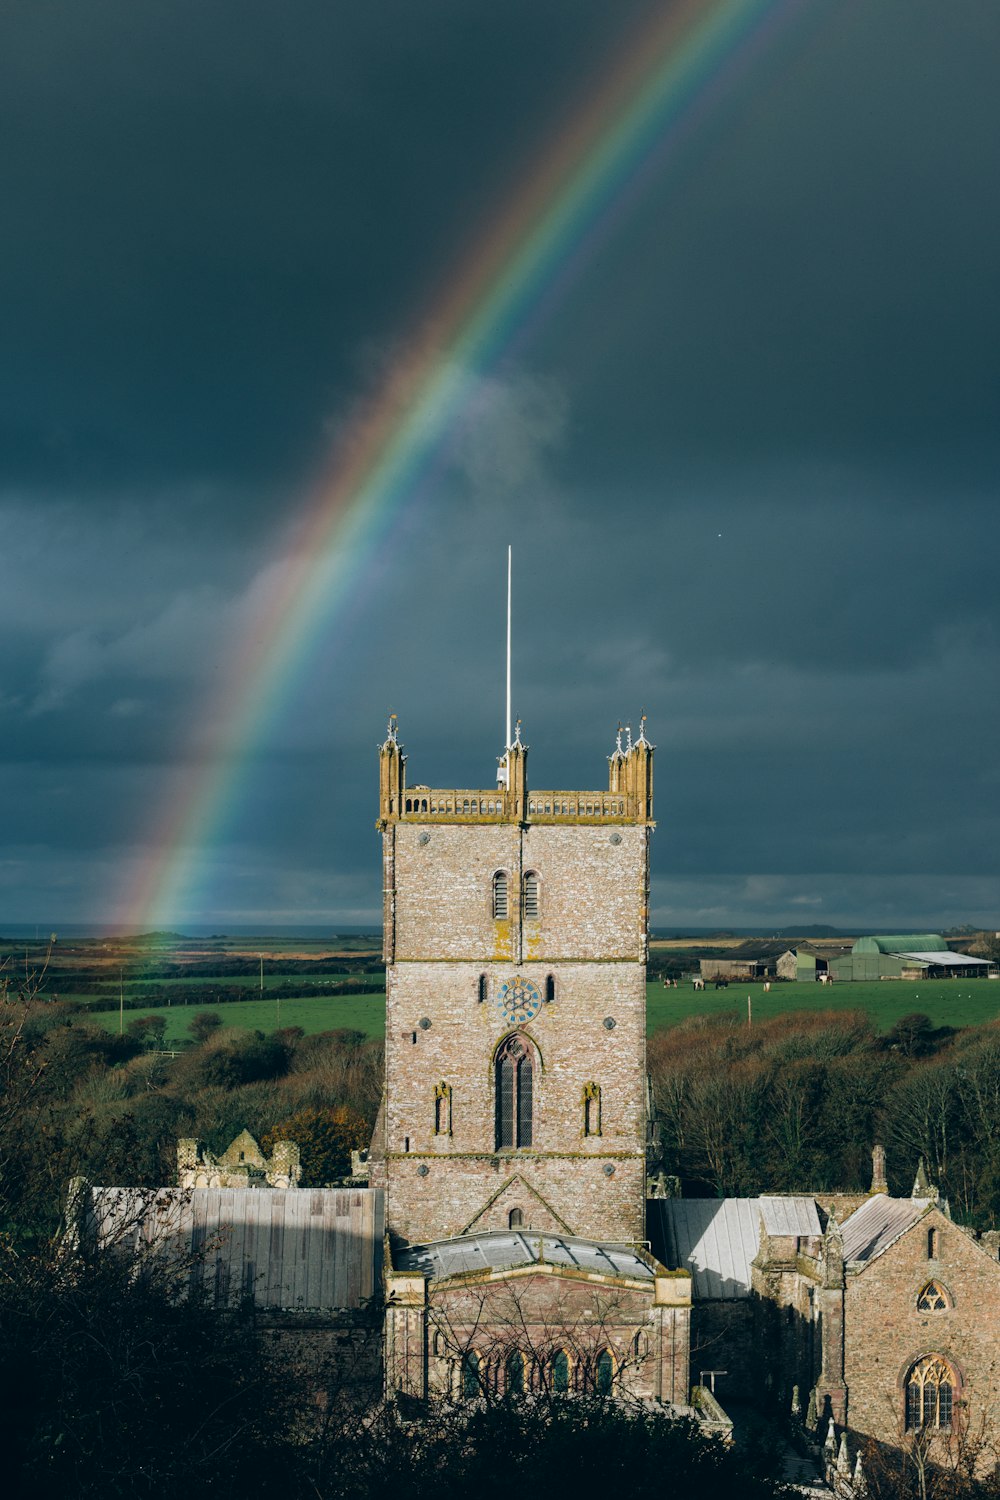 Ein Regenbogen leuchtet am Himmel über einer Burg